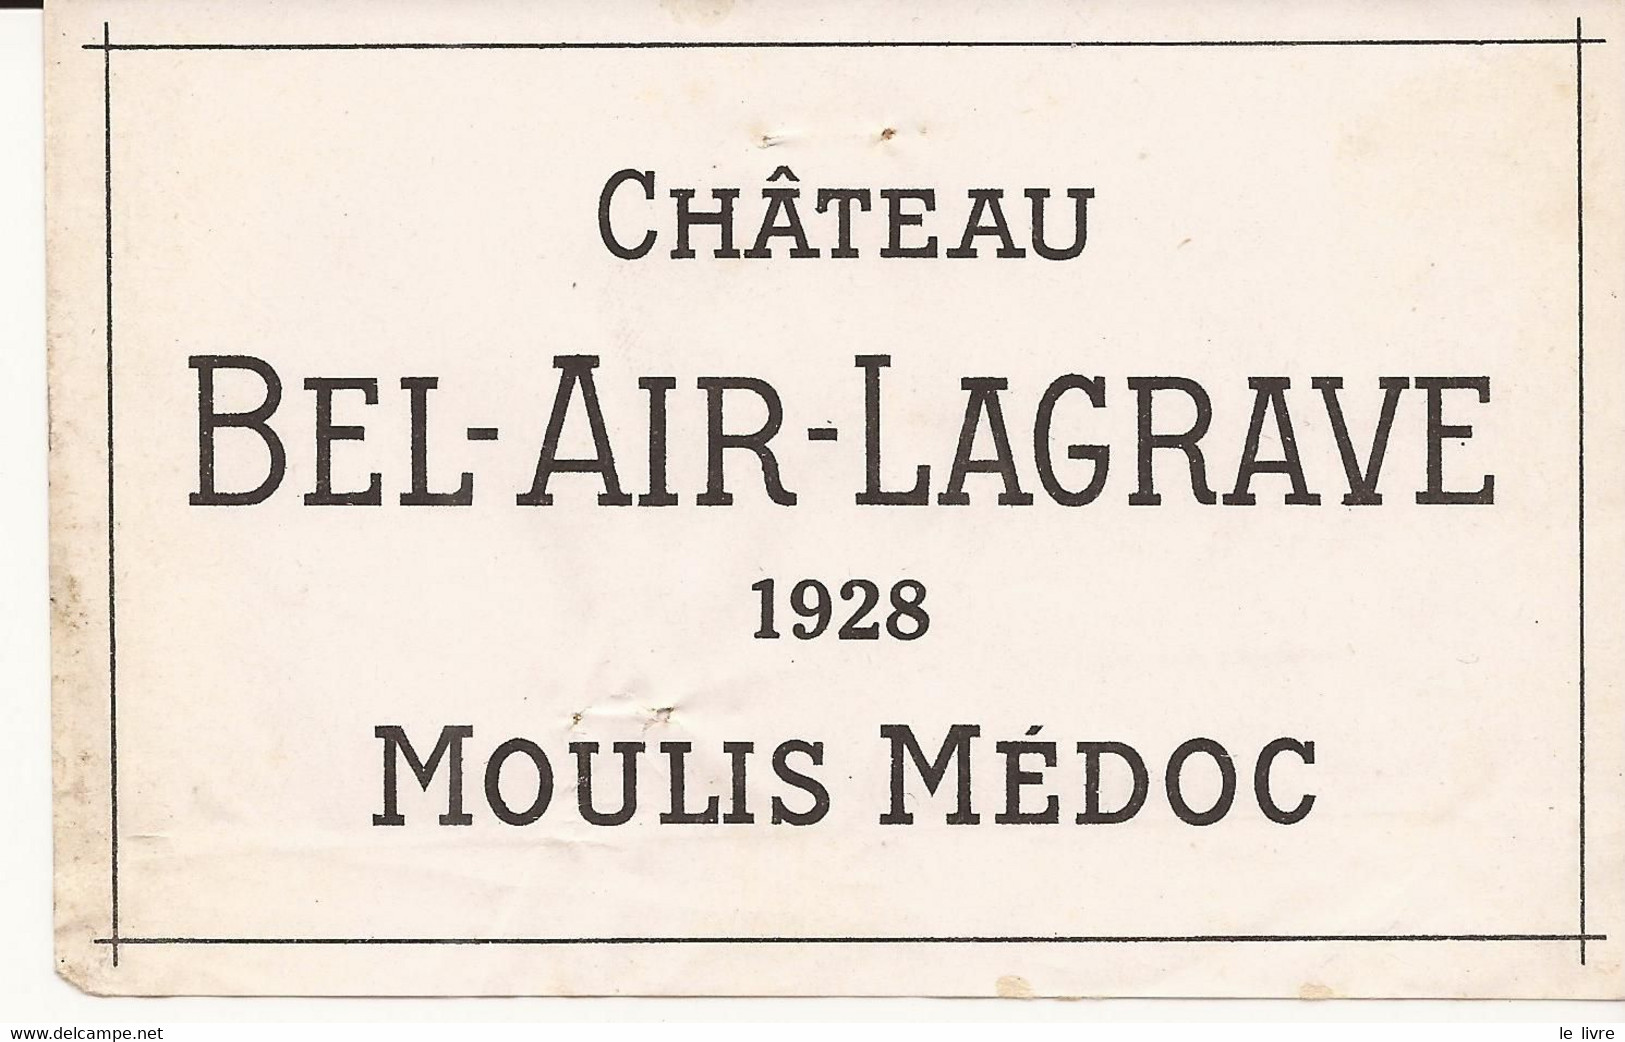 ETIQUETTE ANCIENNE VIN DE BORDEAUX CHATEAU BEL-AIR LAGRAVE 1928 MOULIS MEDOC